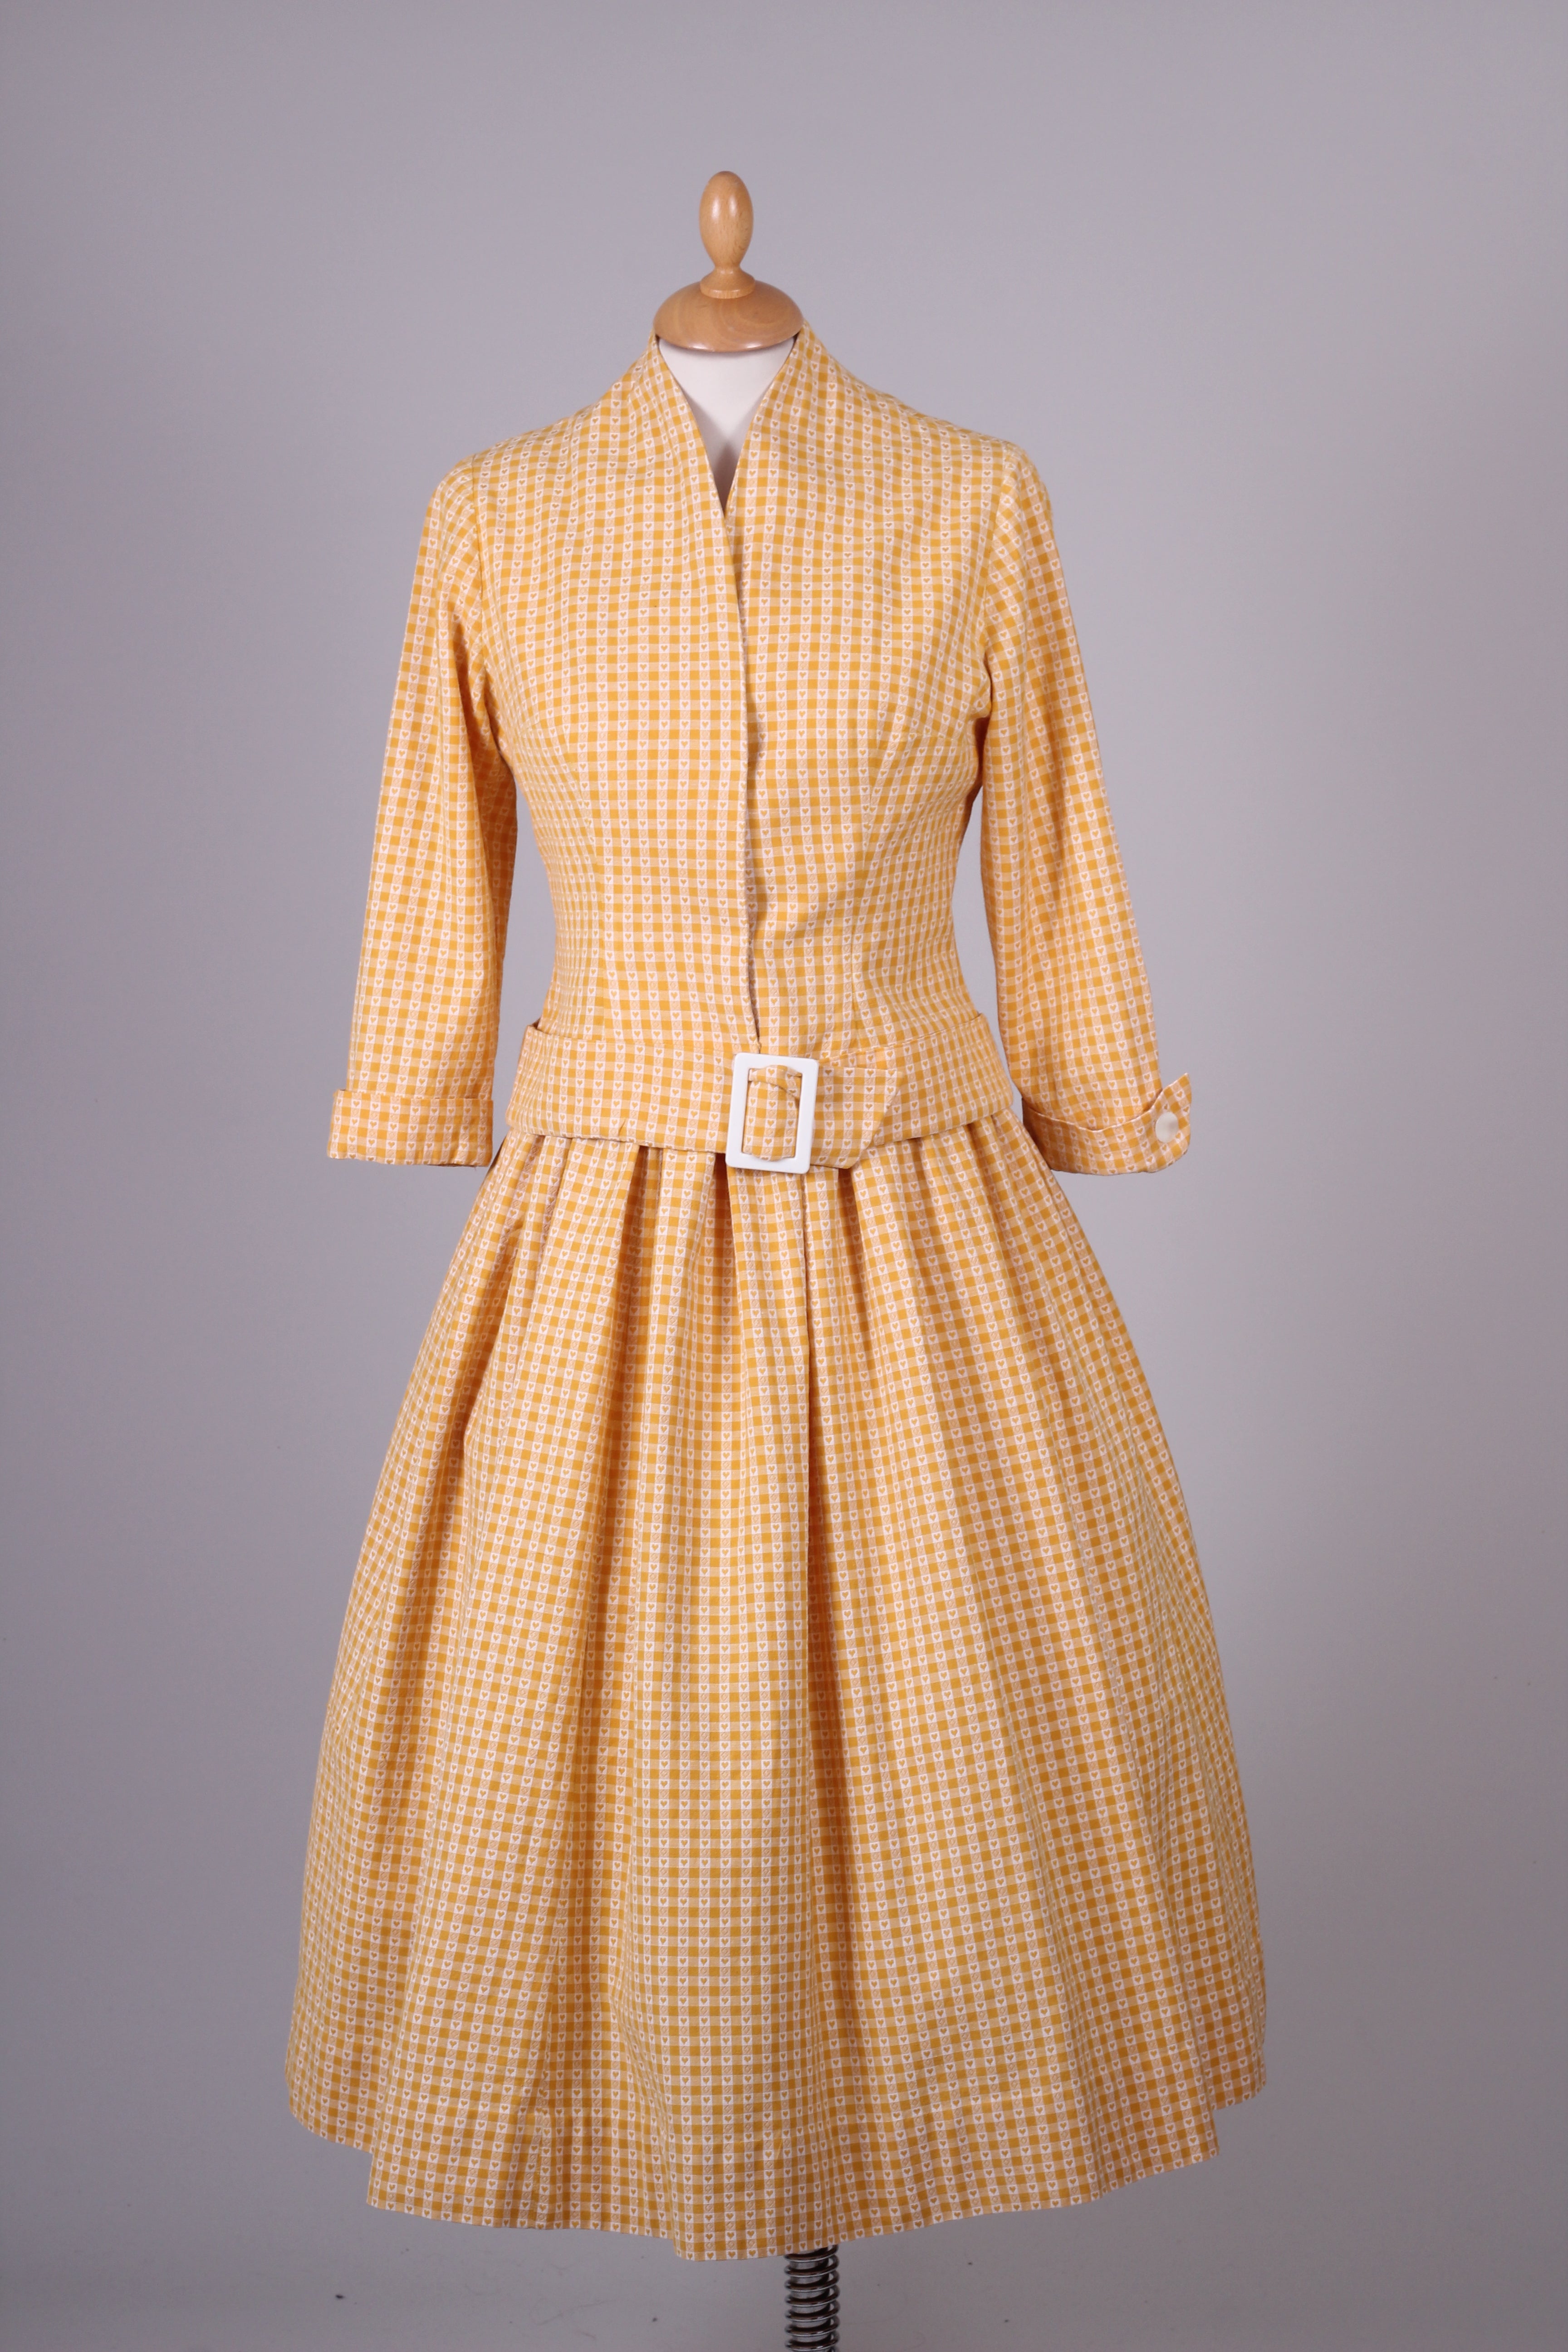 Gul sommerkjole med hjertemønster og jakke 1950. S